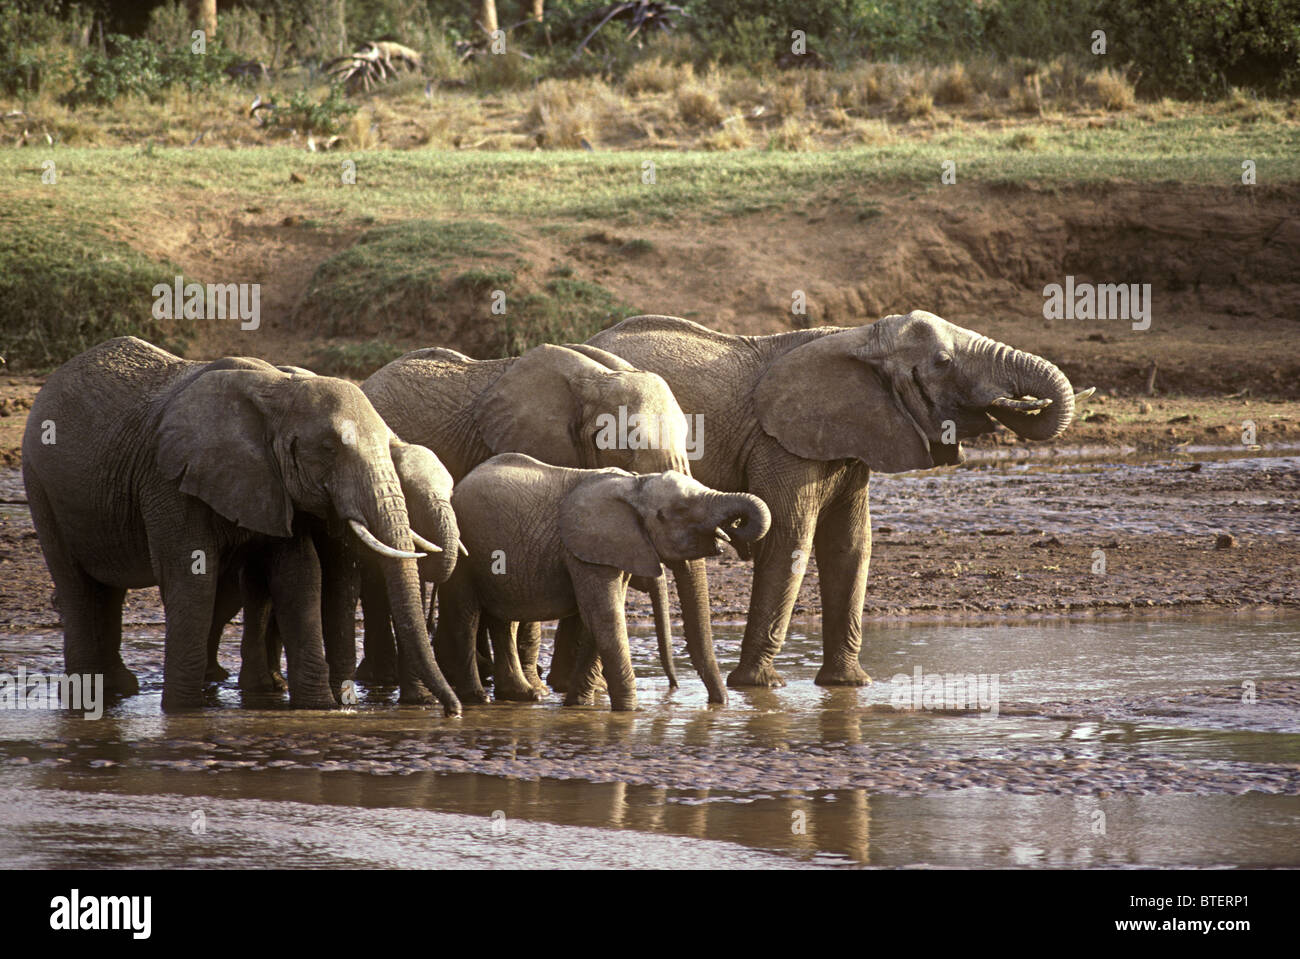 Famille d'éléphants groupe de femelles et veaux boire avec trunks Uaso Nyiro Samburu National Reserve Kenya Afrique de l'Est Banque D'Images